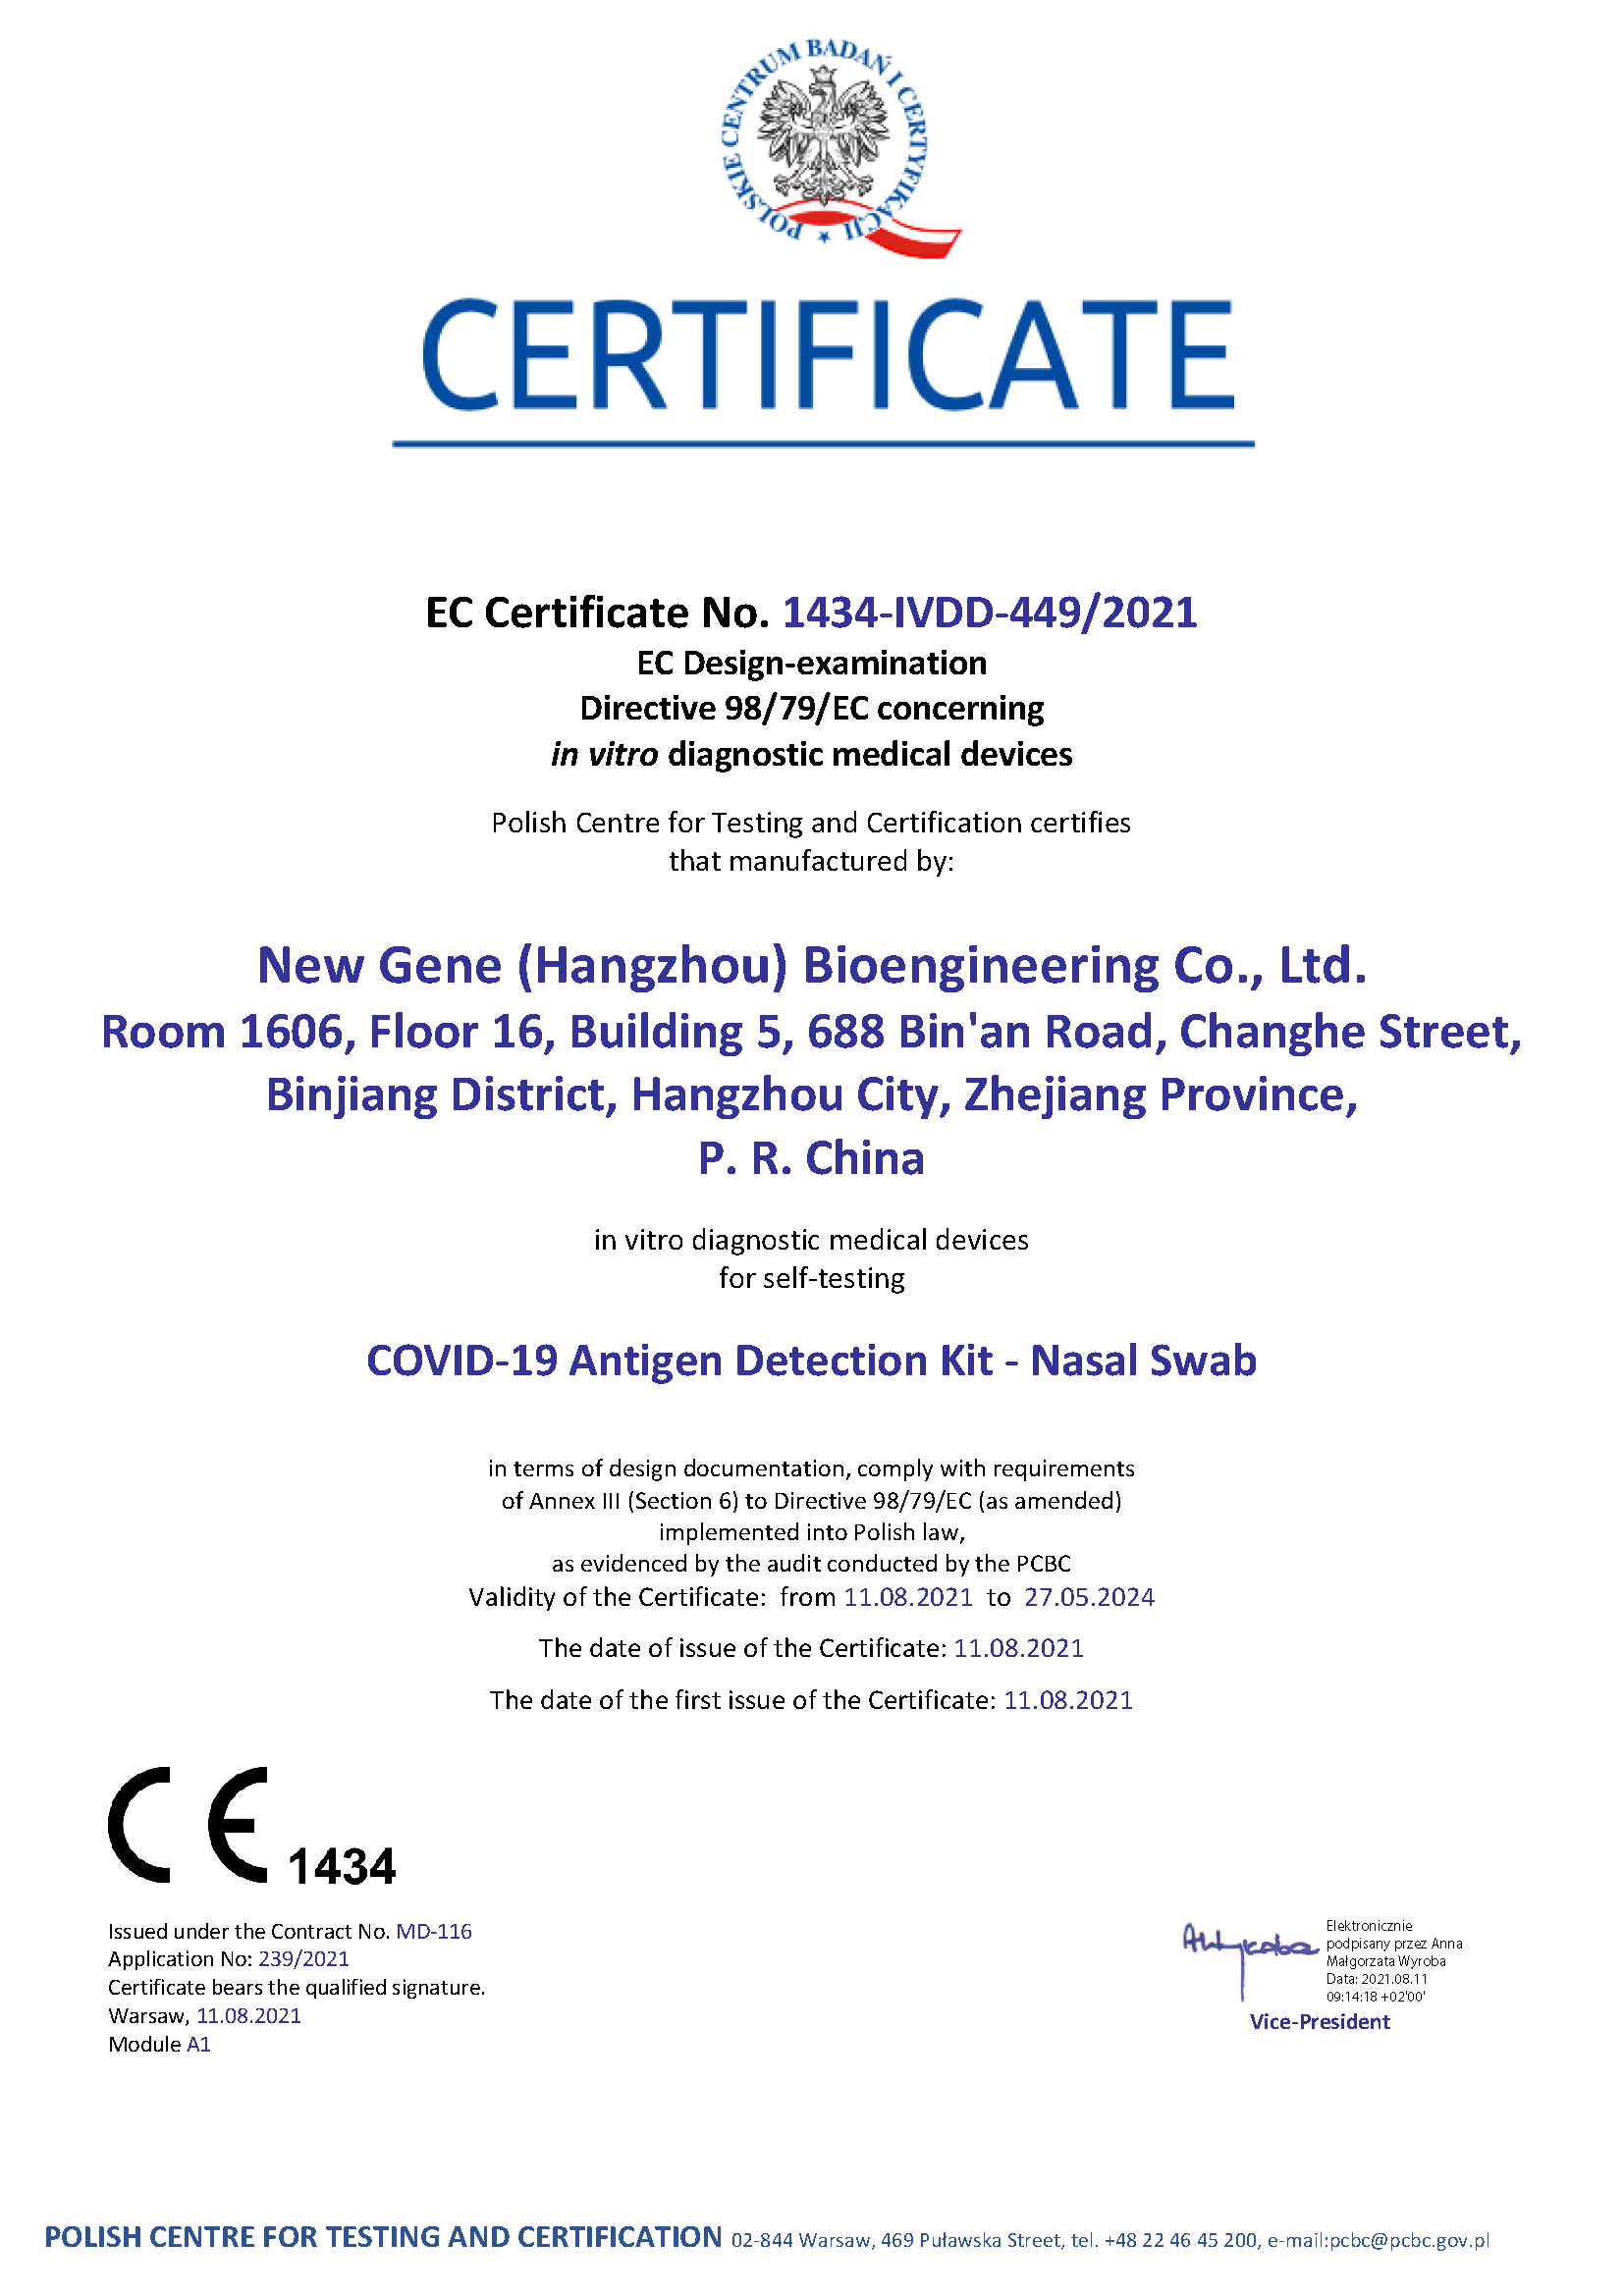 Nouveau kit de détection d'antigène Gene COVID-19 - Certificat d'auto-test (PCBC 1434)